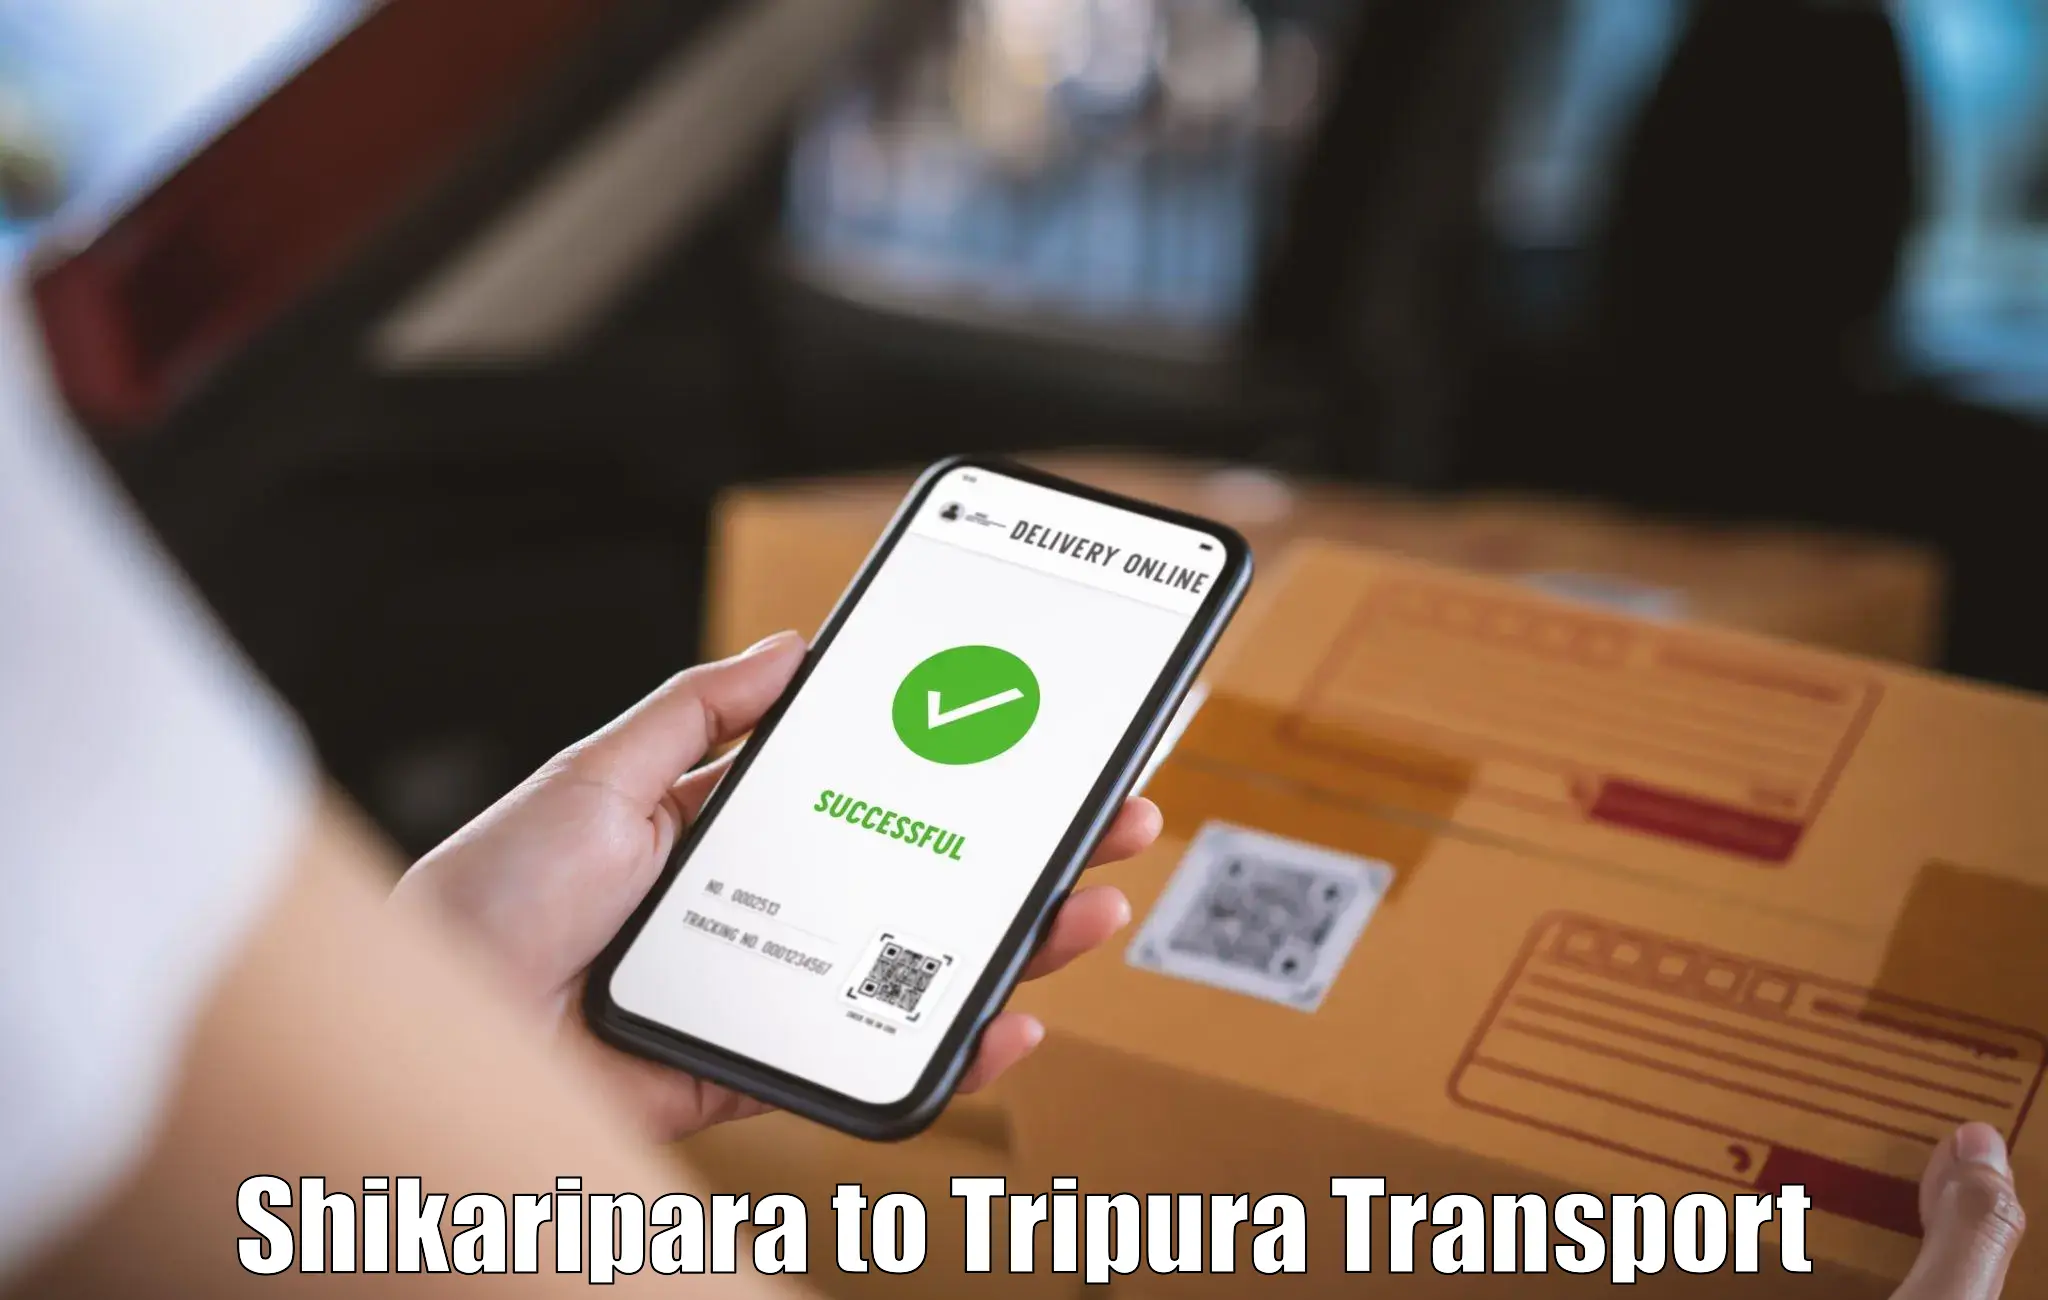 Daily transport service Shikaripara to Dharmanagar